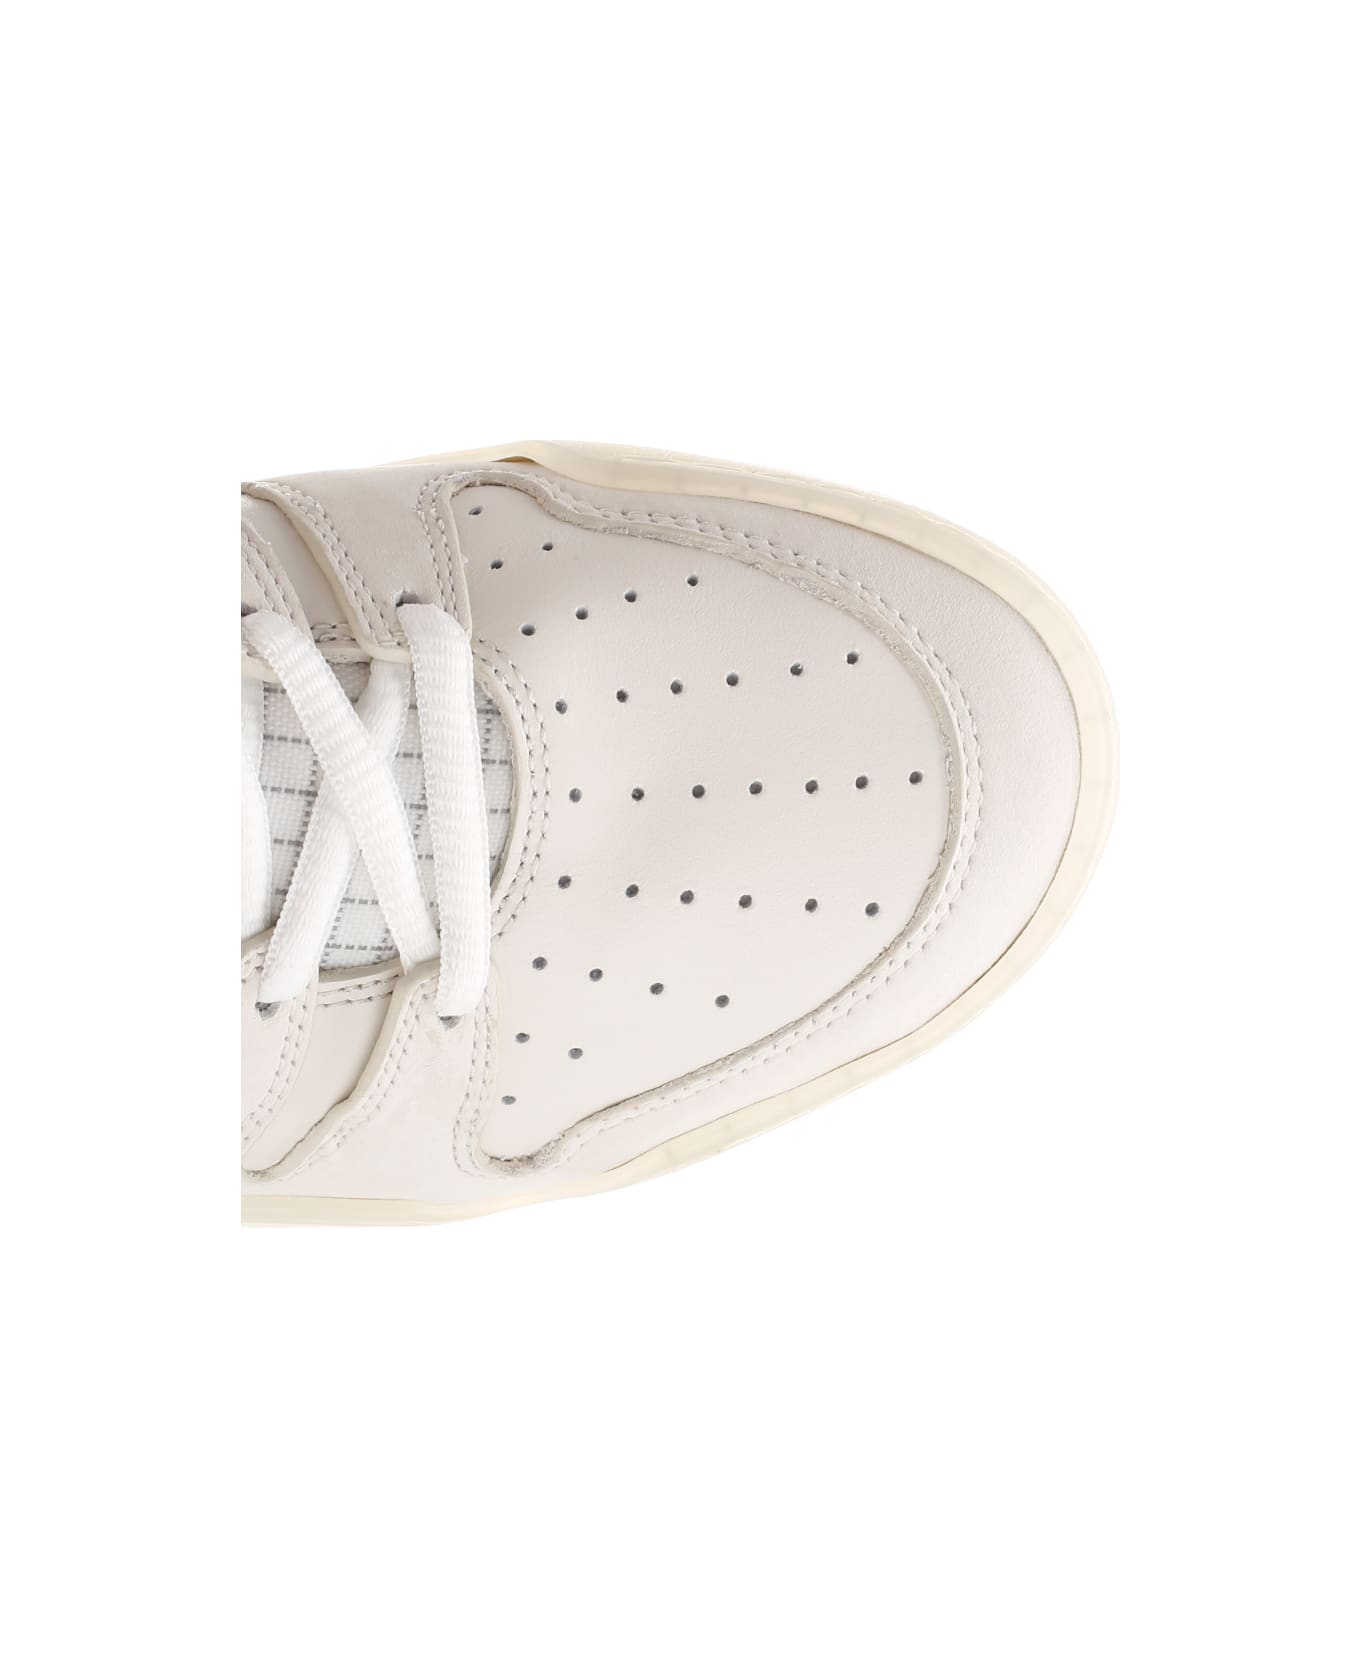 Moncler 'pivot' High-top Sneakers - White